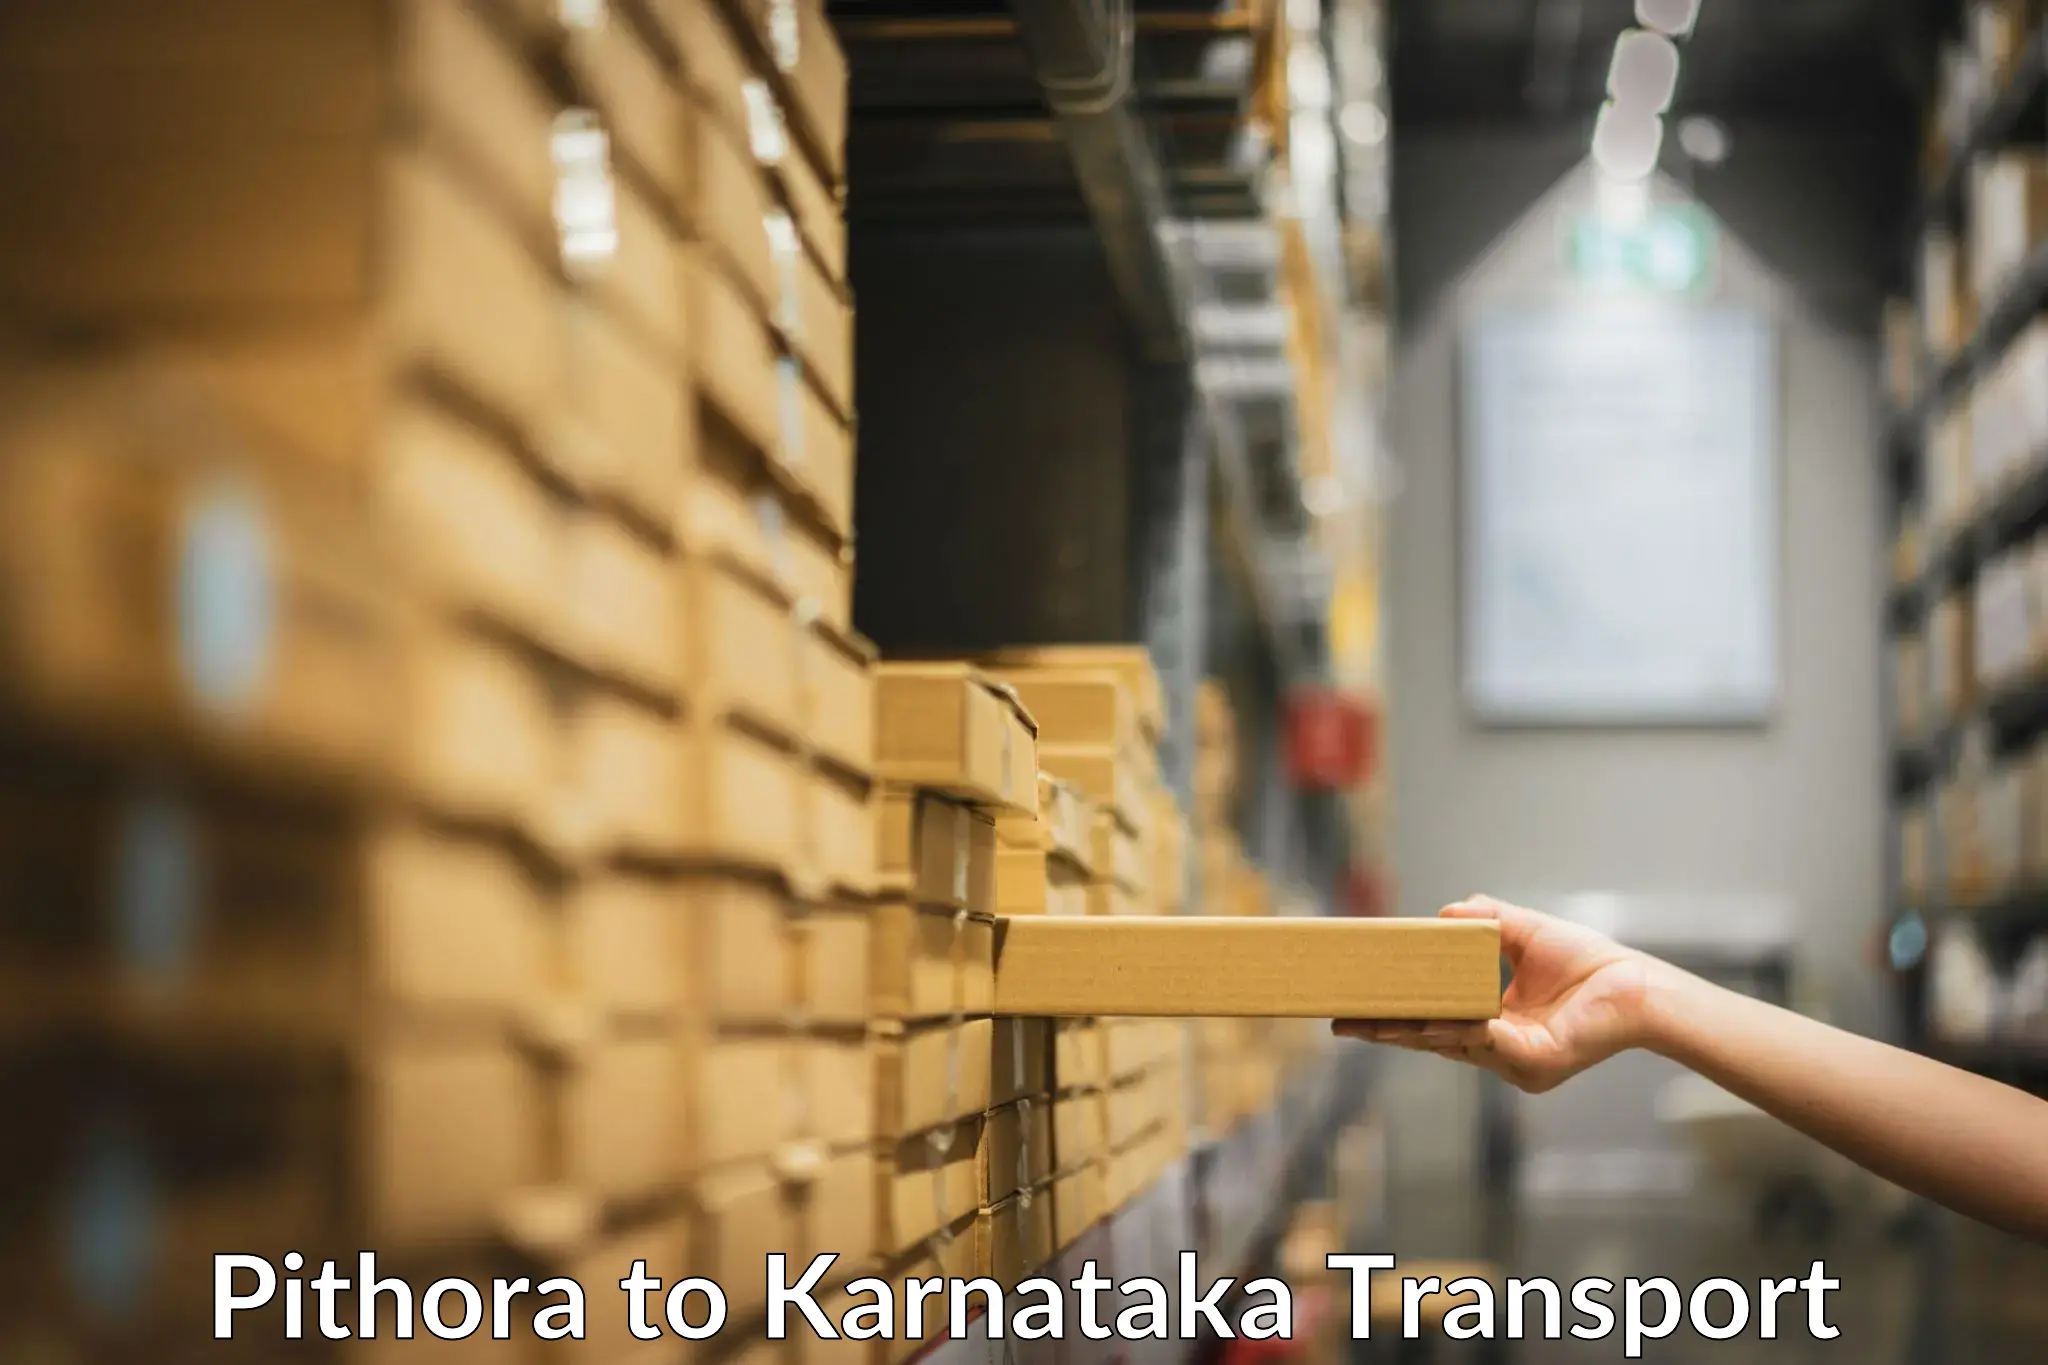 Container transport service Pithora to Karnataka